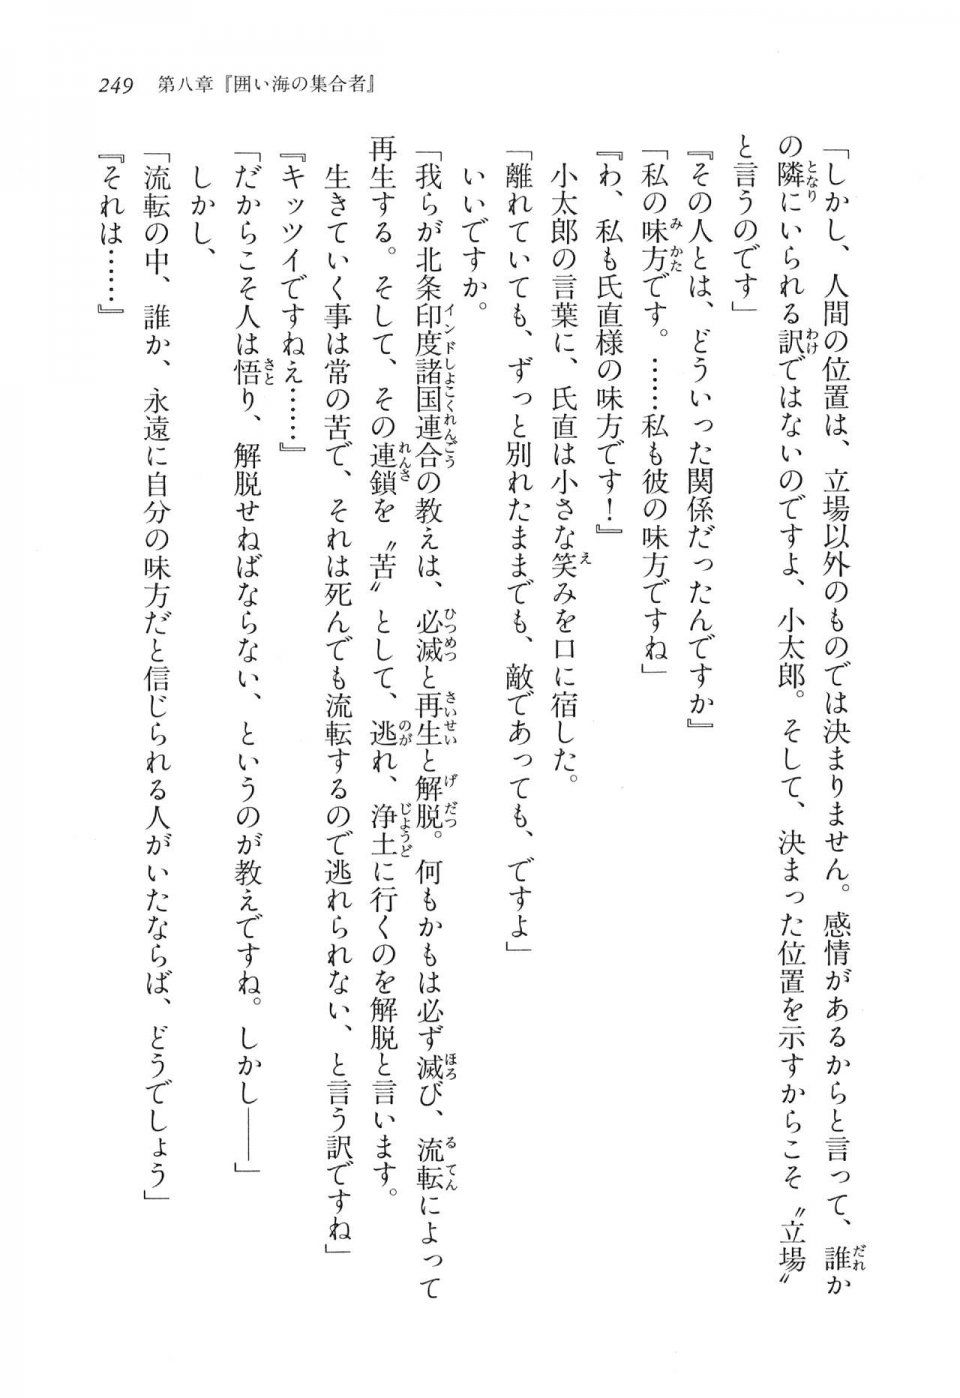 Kyoukai Senjou no Horizon LN Vol 11(5A) - Photo #249